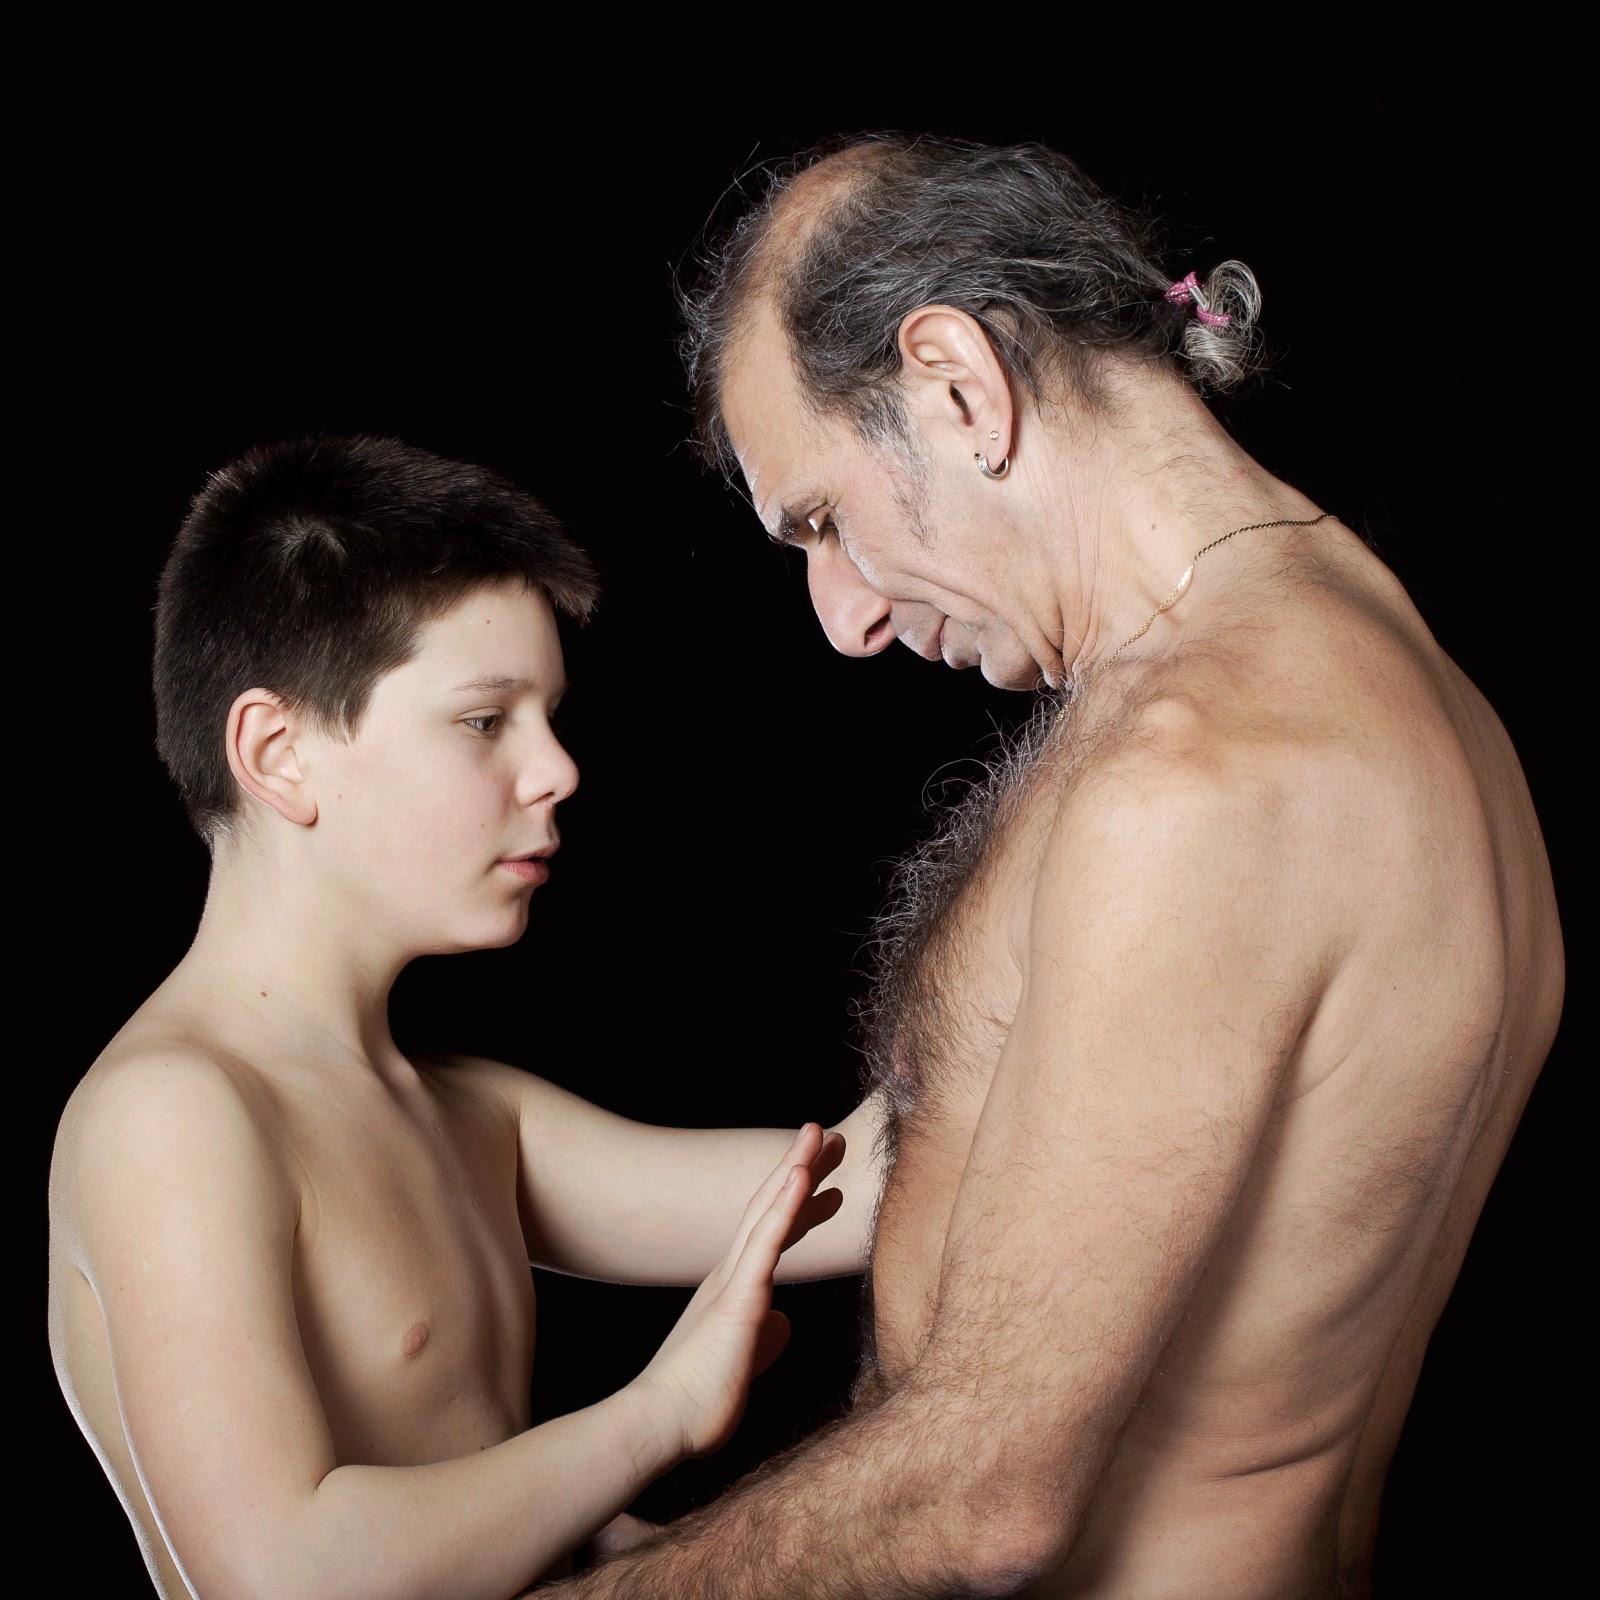 Série Fotográfica Mostra Intimidade entre pai e filho 